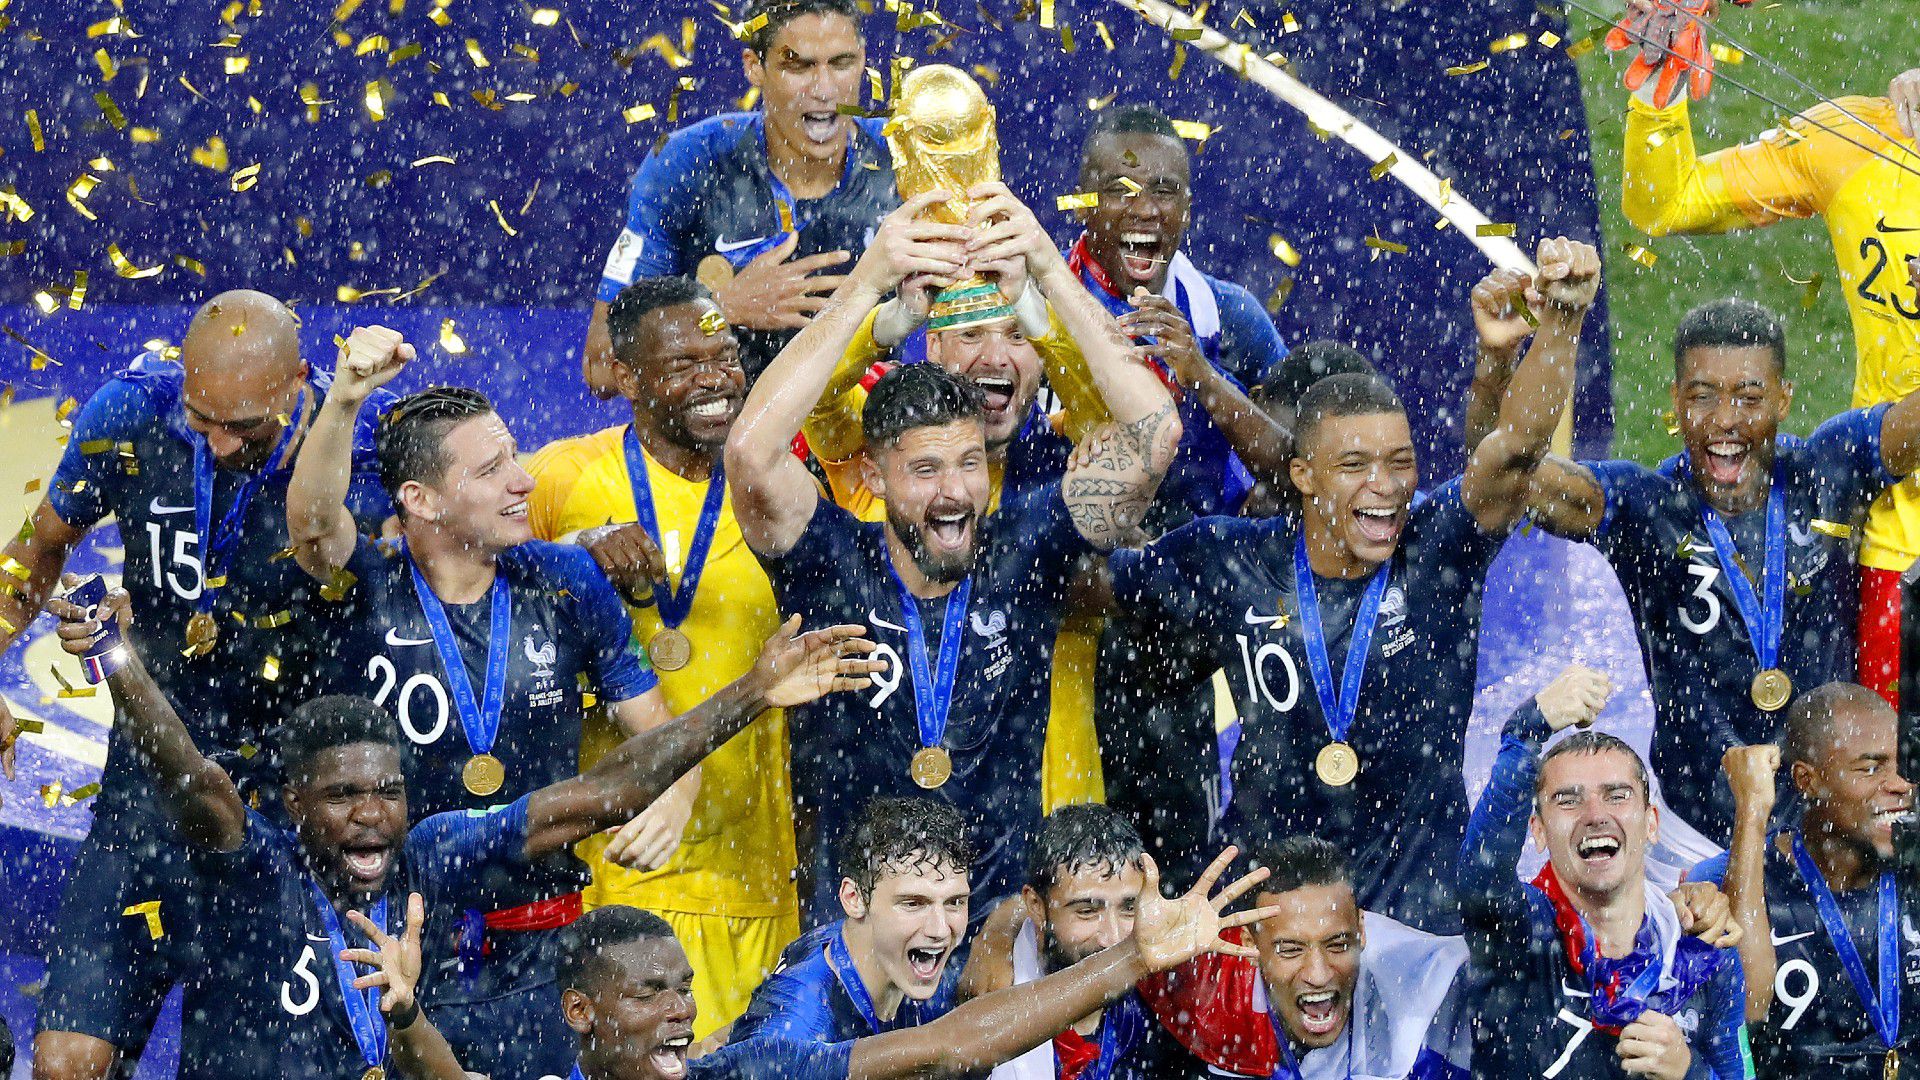 Az idei győztes 16,4 milliárd forintnak megfelelő összeget kap a FIFA-tól – ez 1,5 milliárddal több, mint négy éve a franciák jutalma /Fotó: Getty Images